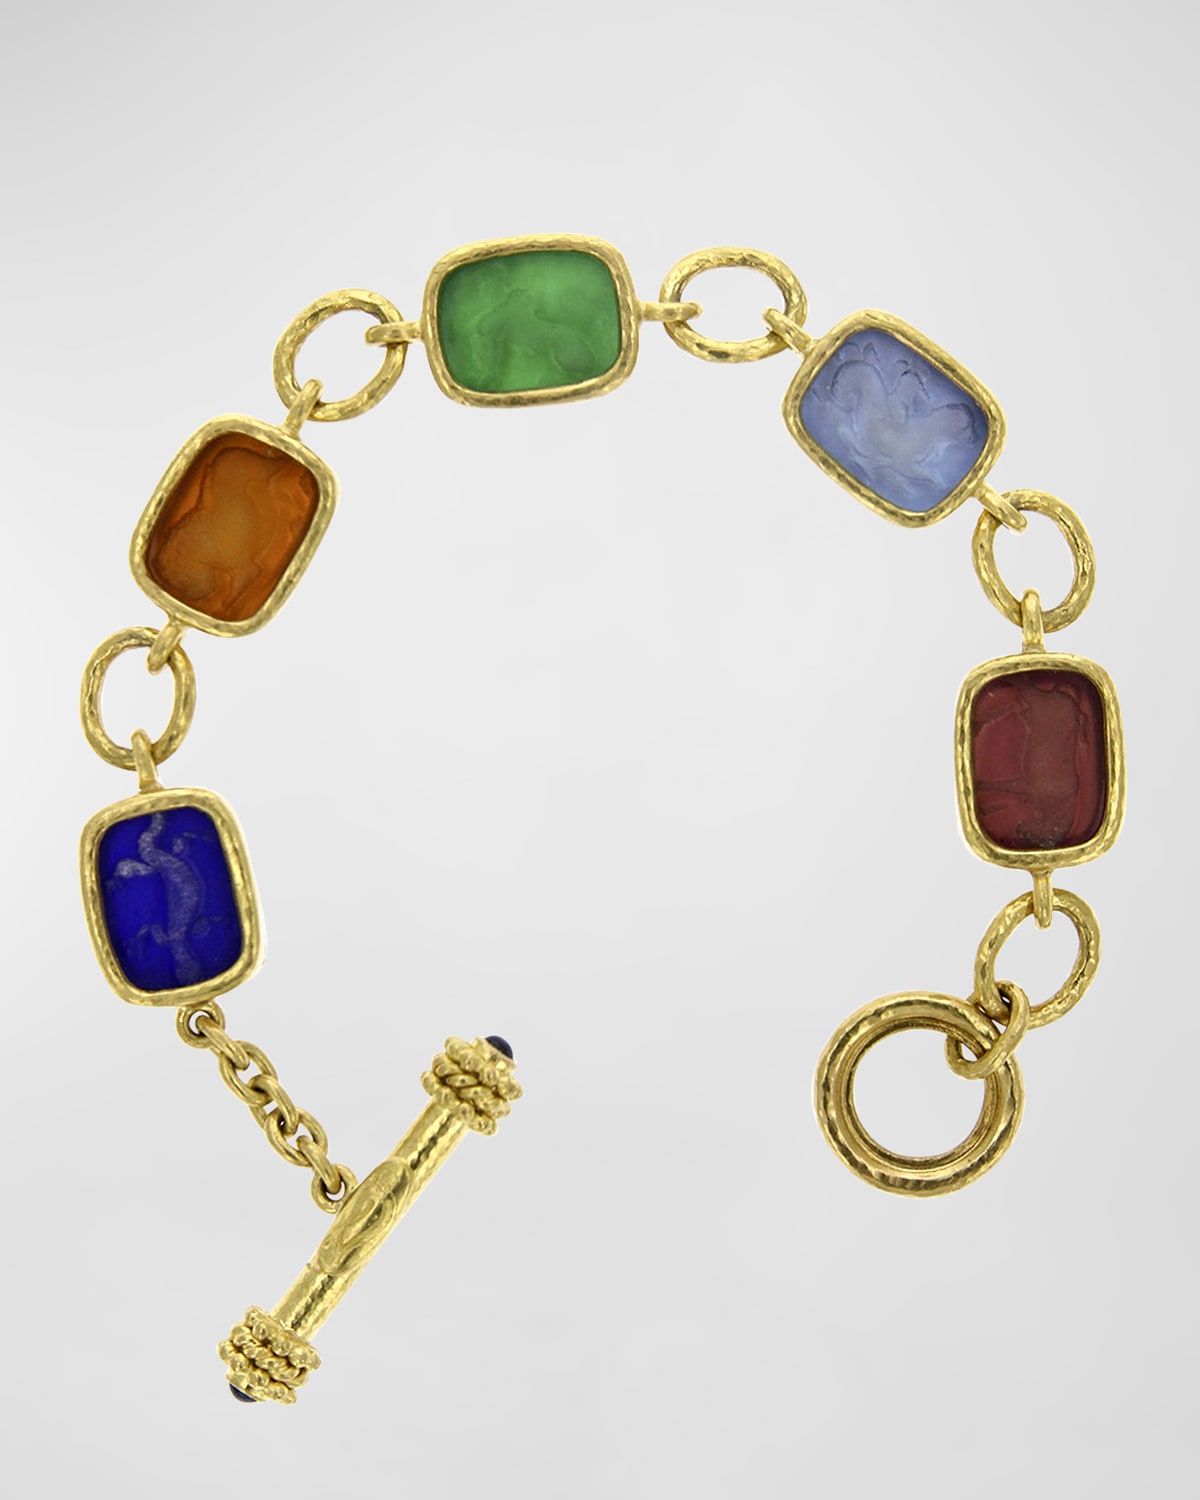 Antiqued Animal Intaglio 19k Gold Toggle Bracelet